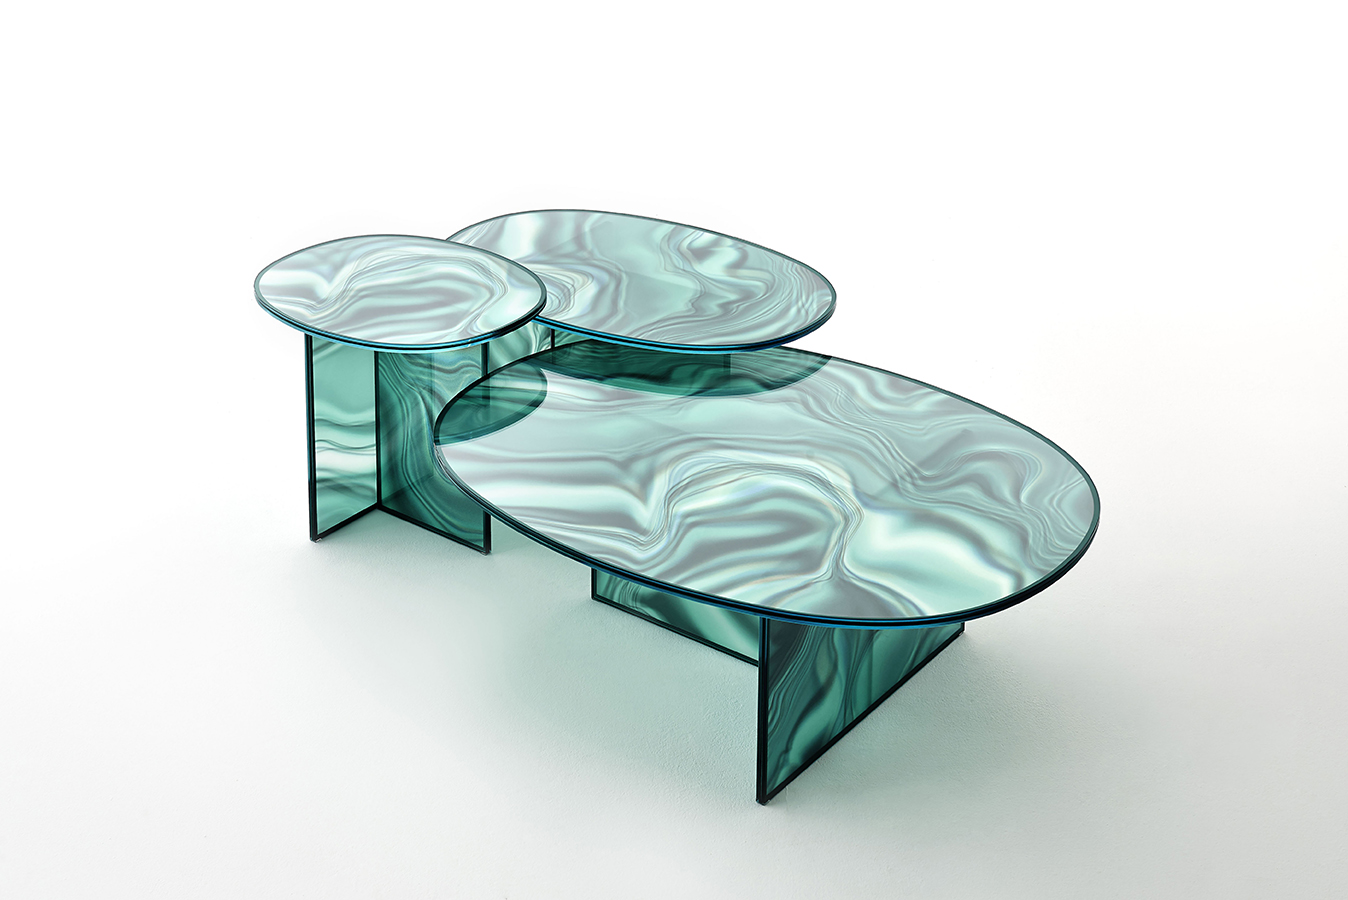 Patricia Urquiola , Las mesas liquefy de vidrio templado, producidas por Glas Italia, son un diseño de la española Patricia Urquiola. Cuentan con un tratamiento especial que simula la textura del mármol con la ligereza y lo translúcido del vidrio.